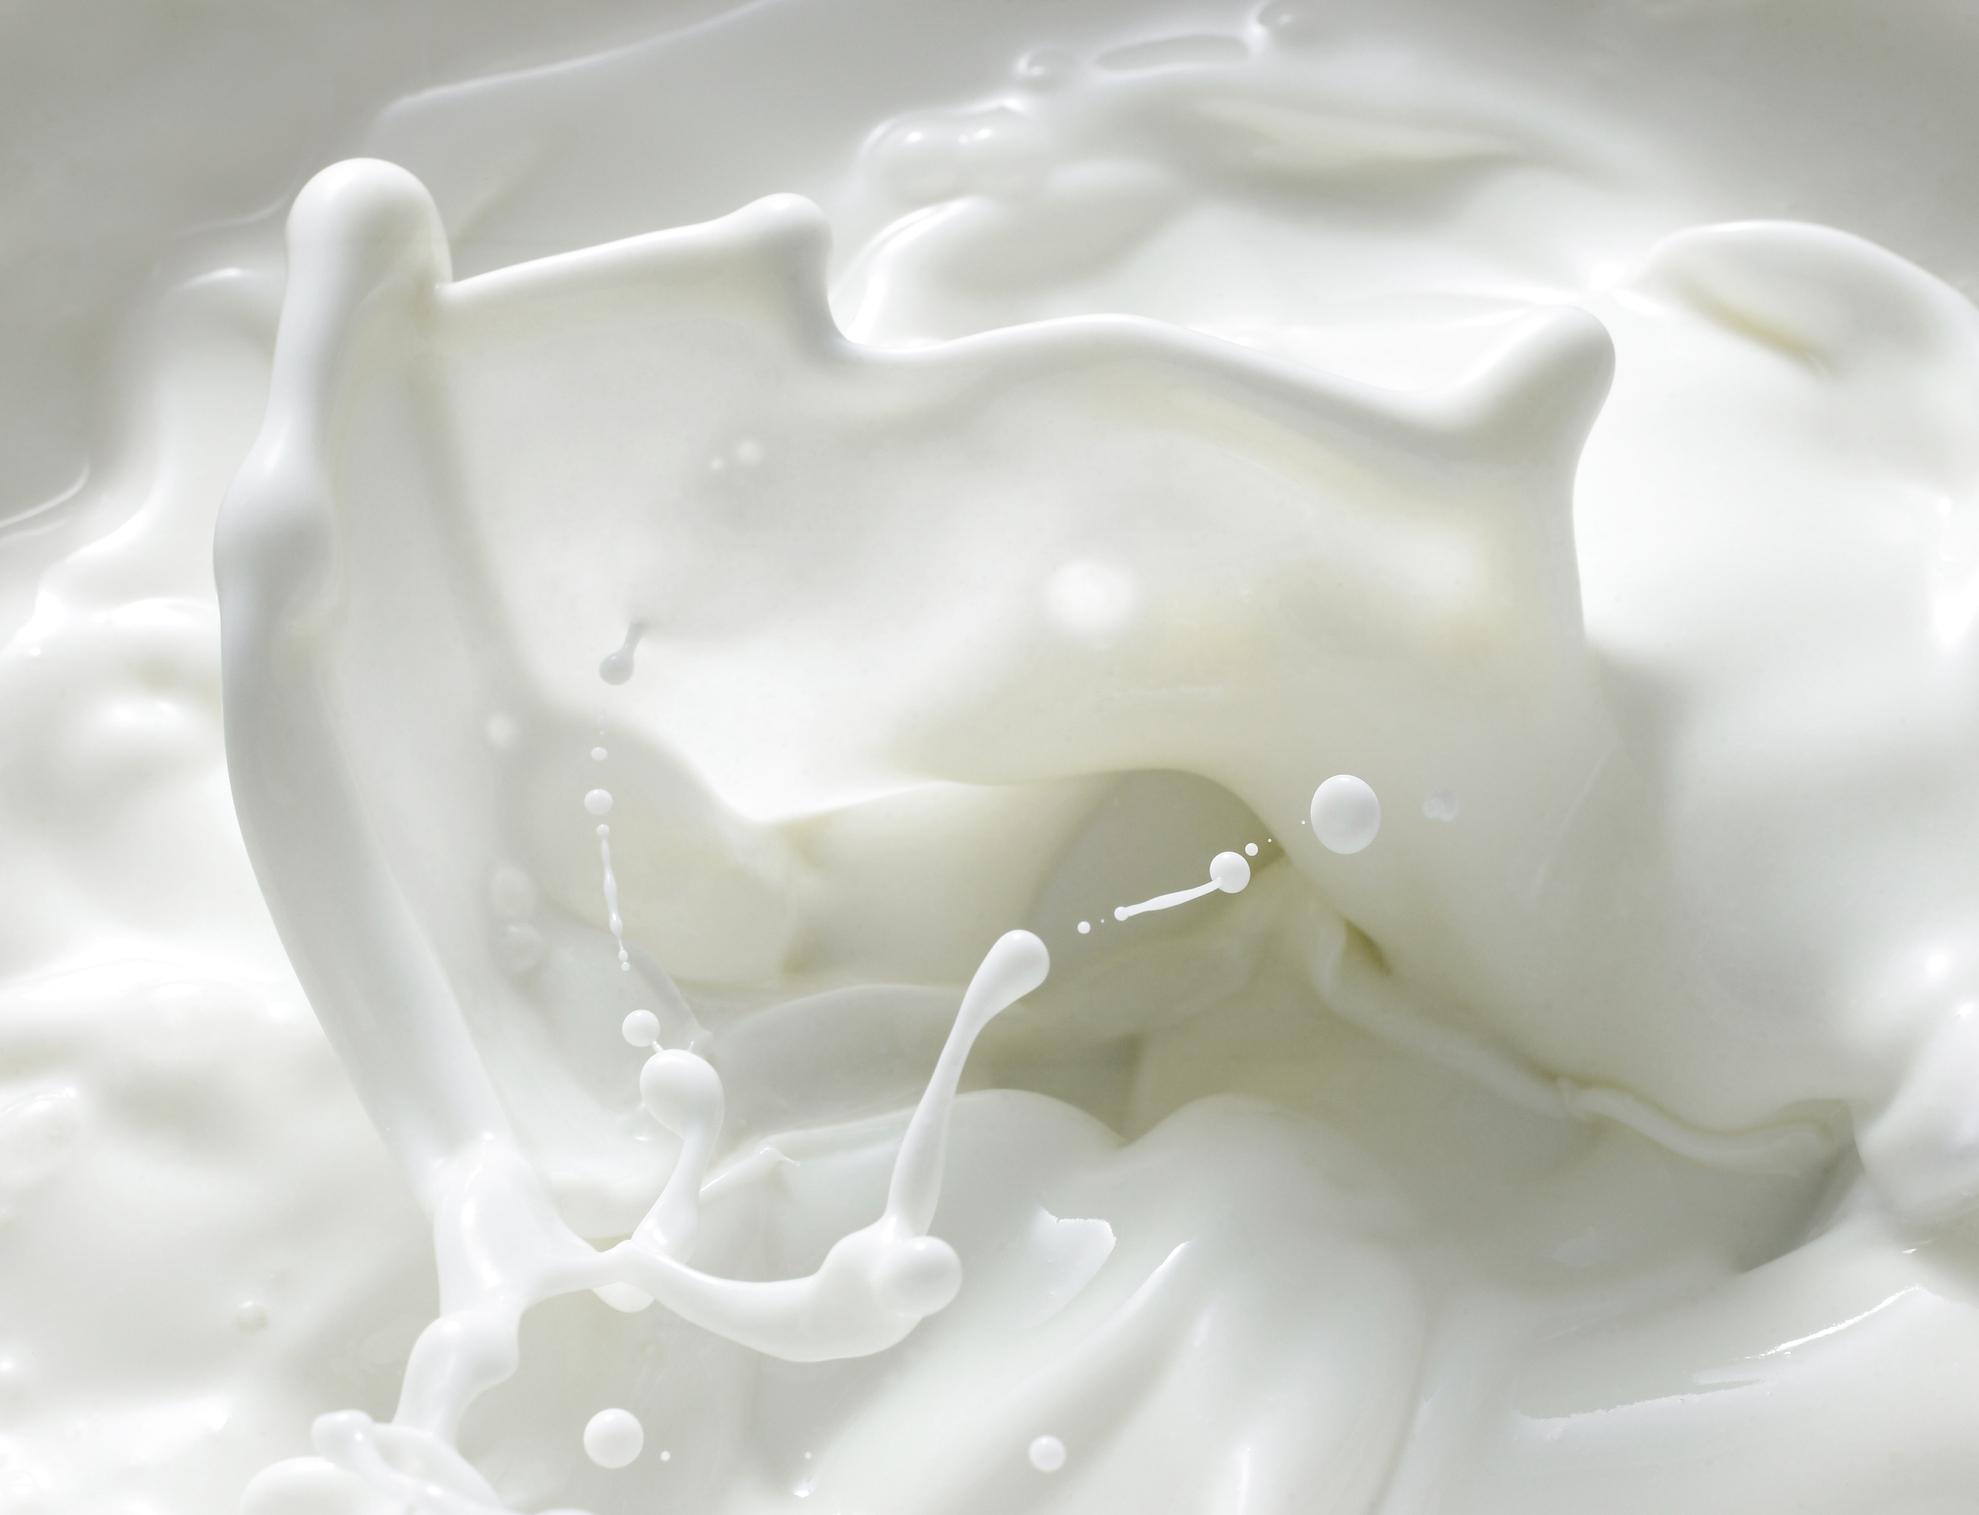 L’inchiesta sul latte adulterato spiegata in breve